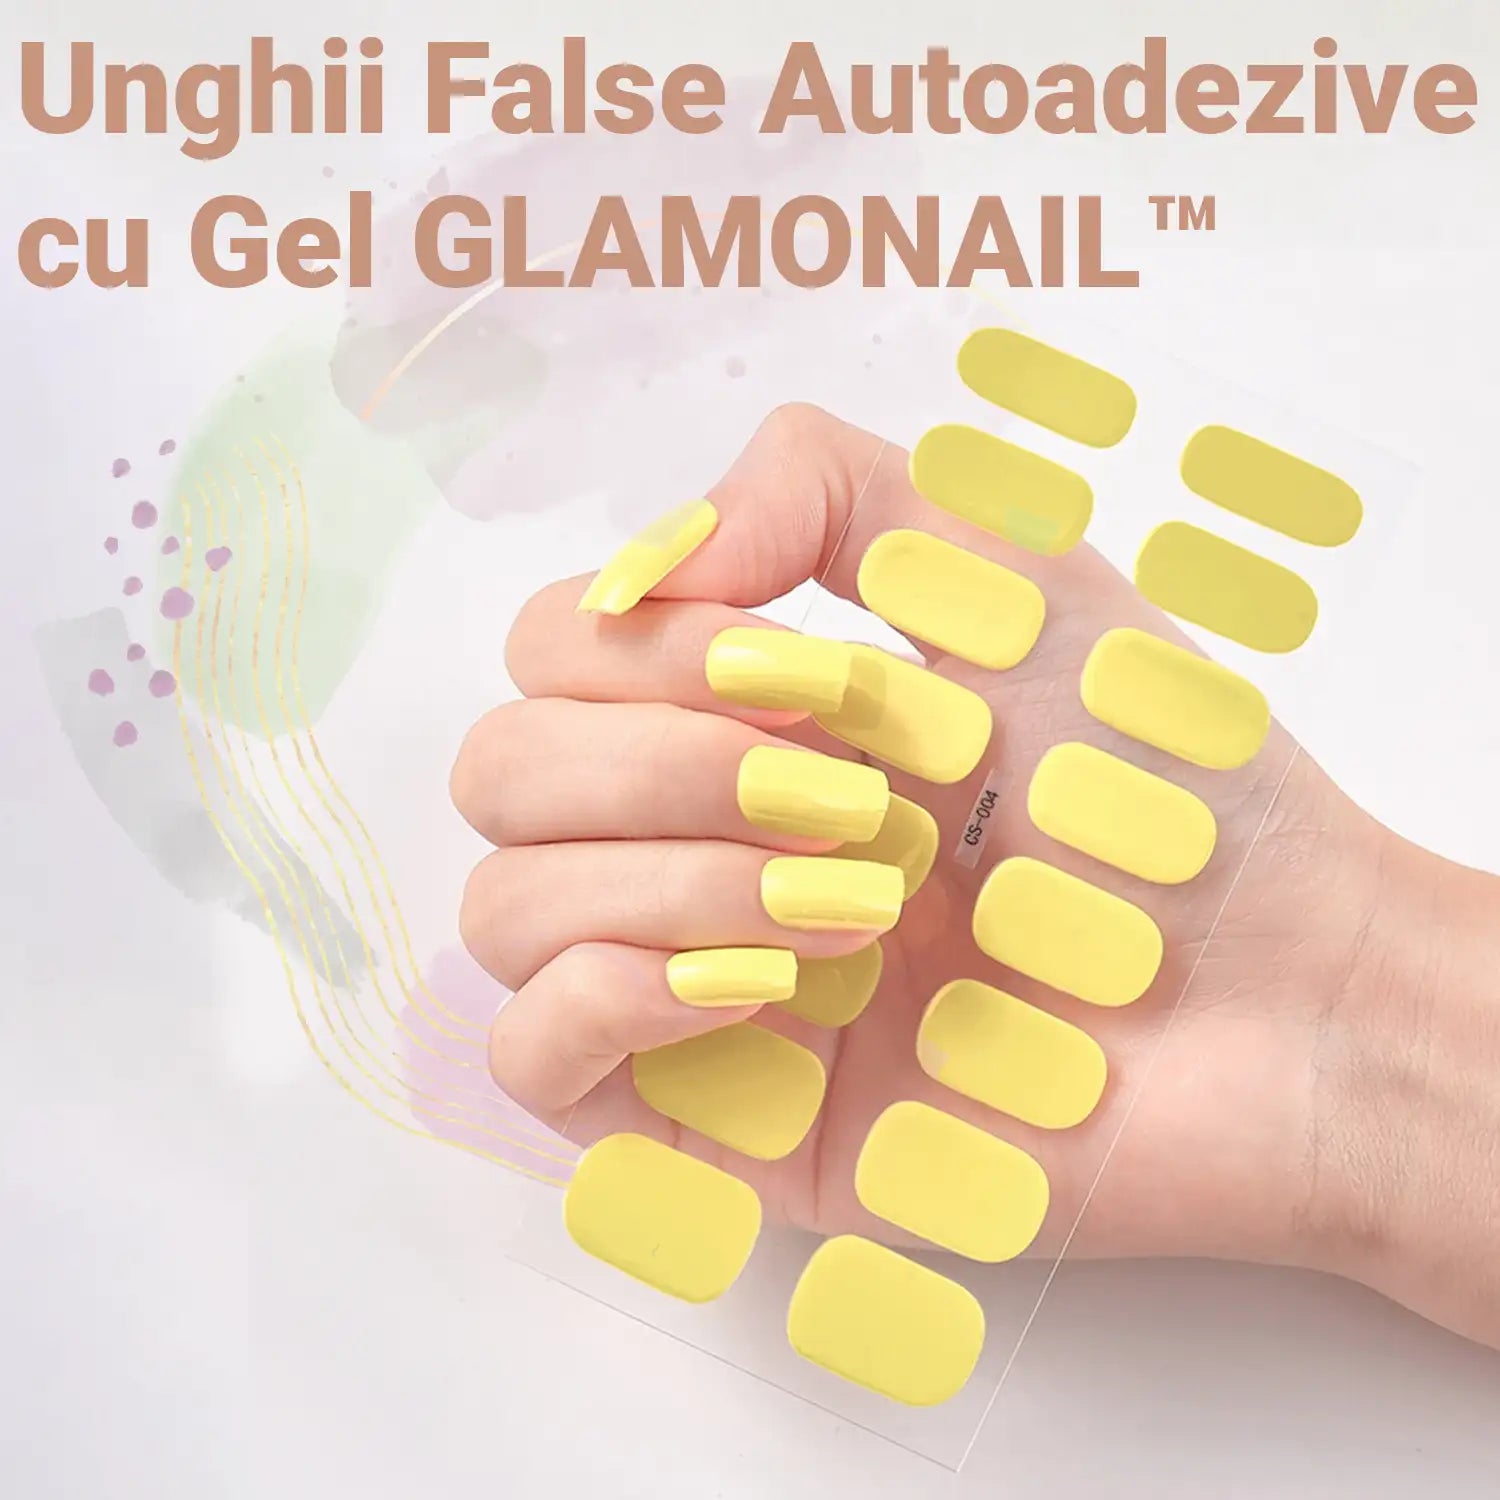 Unghii False Autoadezive cu Gel GLAMONAIL™